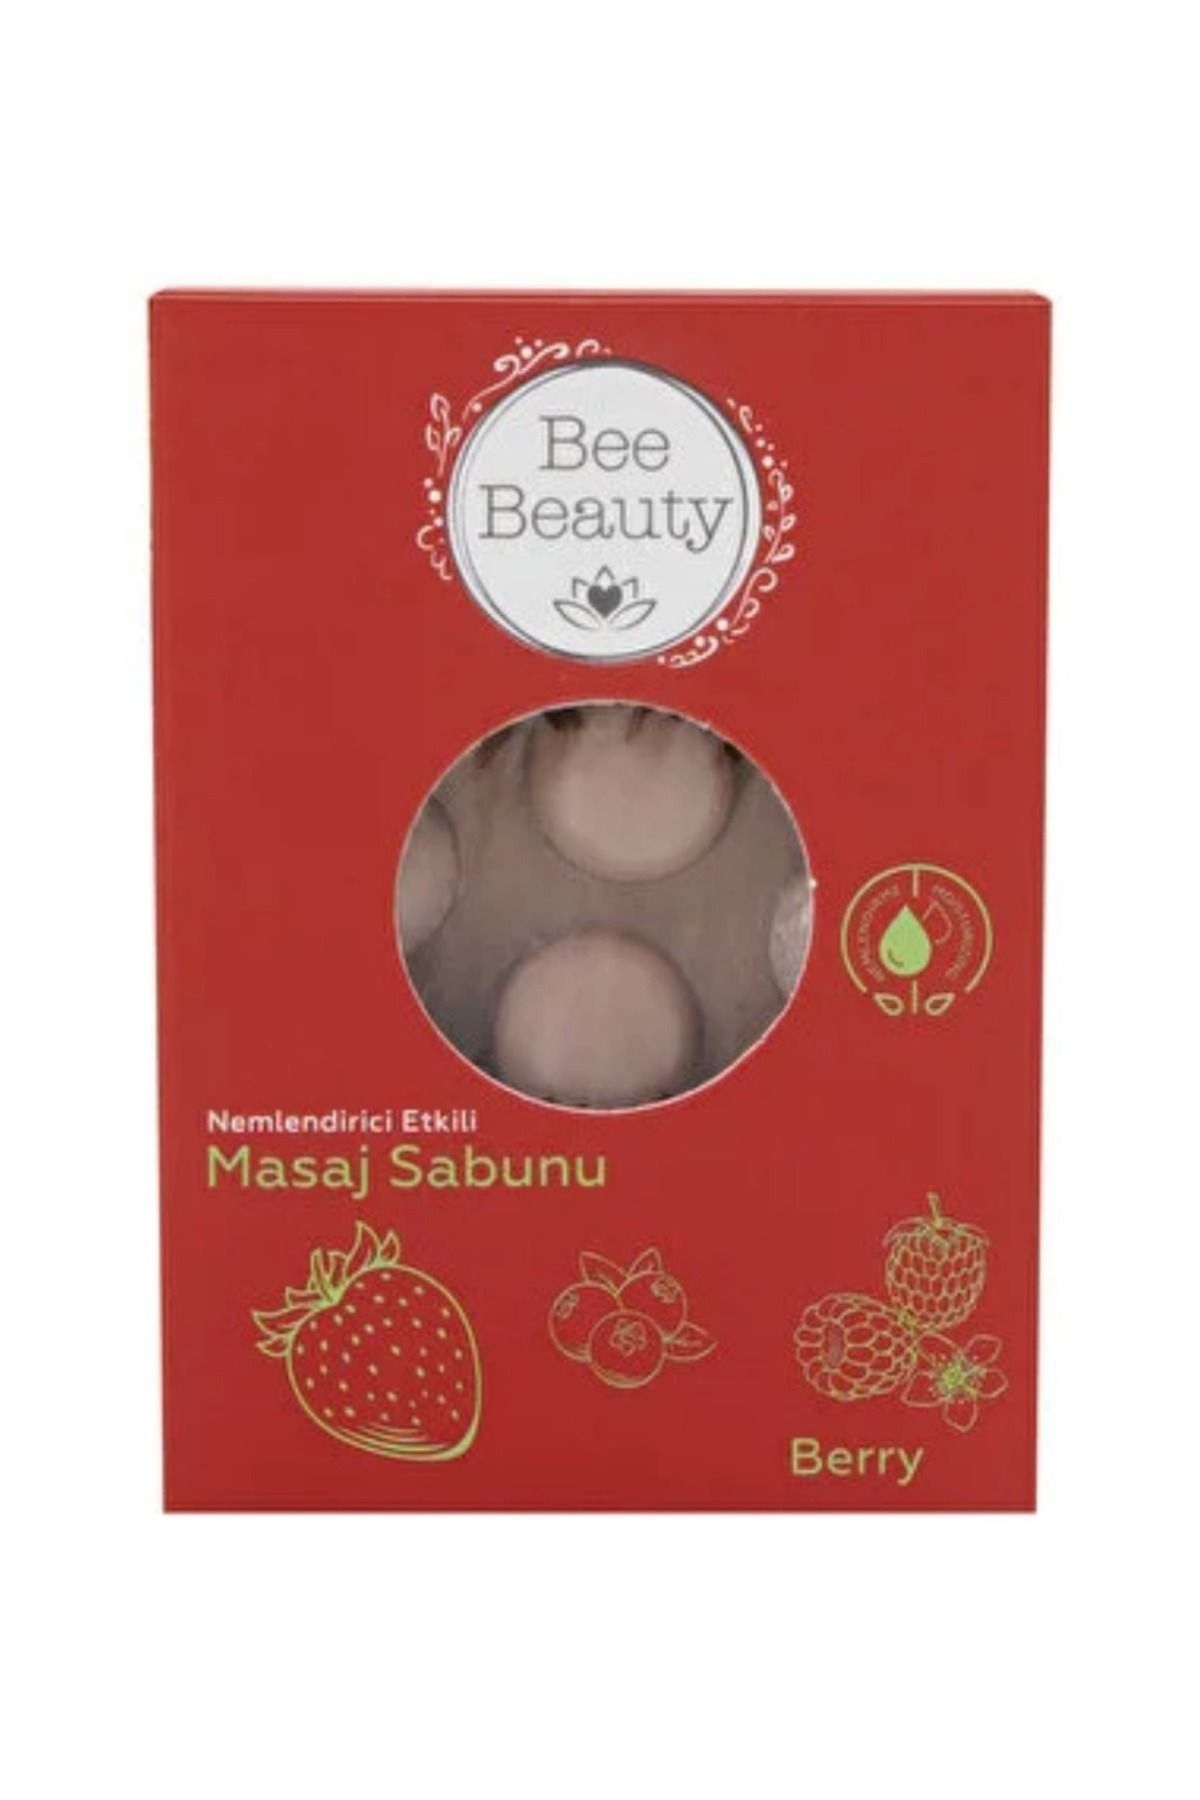 Bee Beauty Nemlendirici Etkili Berry Masaj Sabunu 110 gr